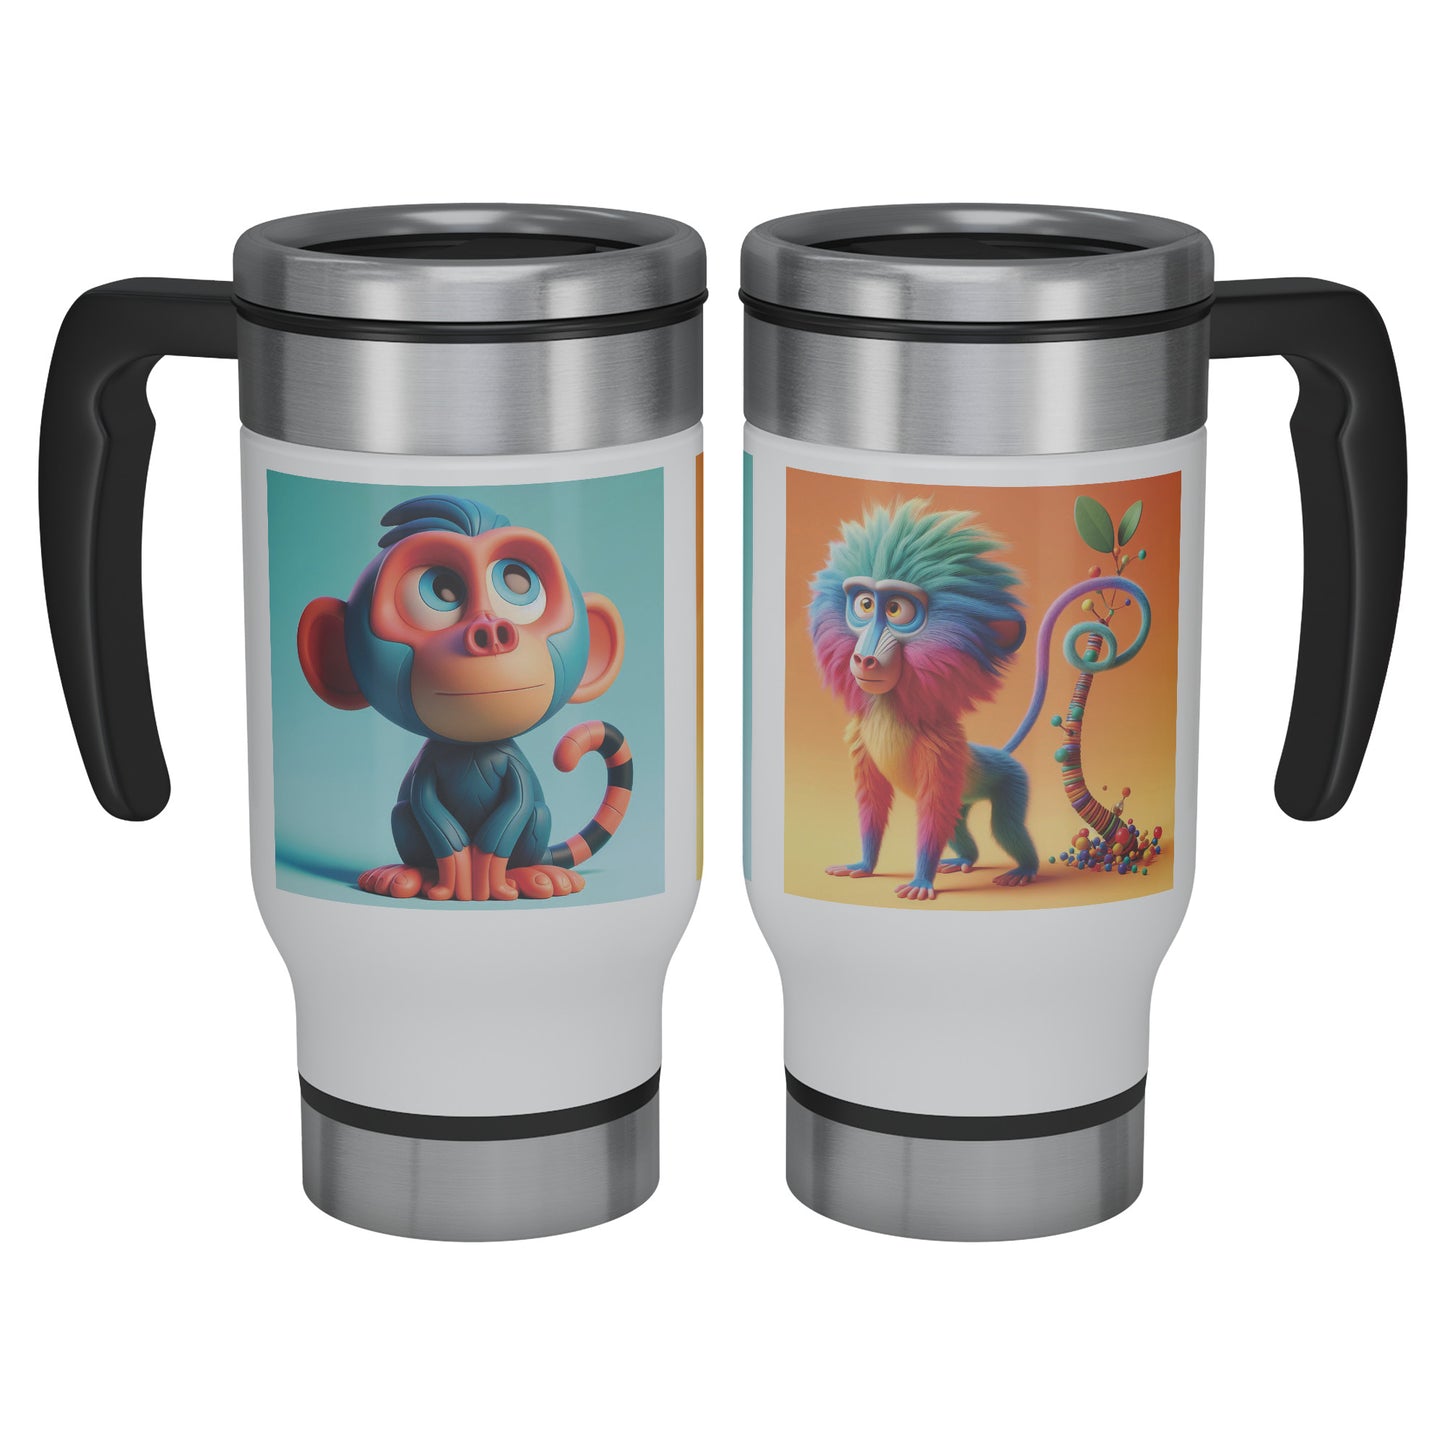 Cute & Adorable Animals - 14oz Travel Mug - Baboons #1